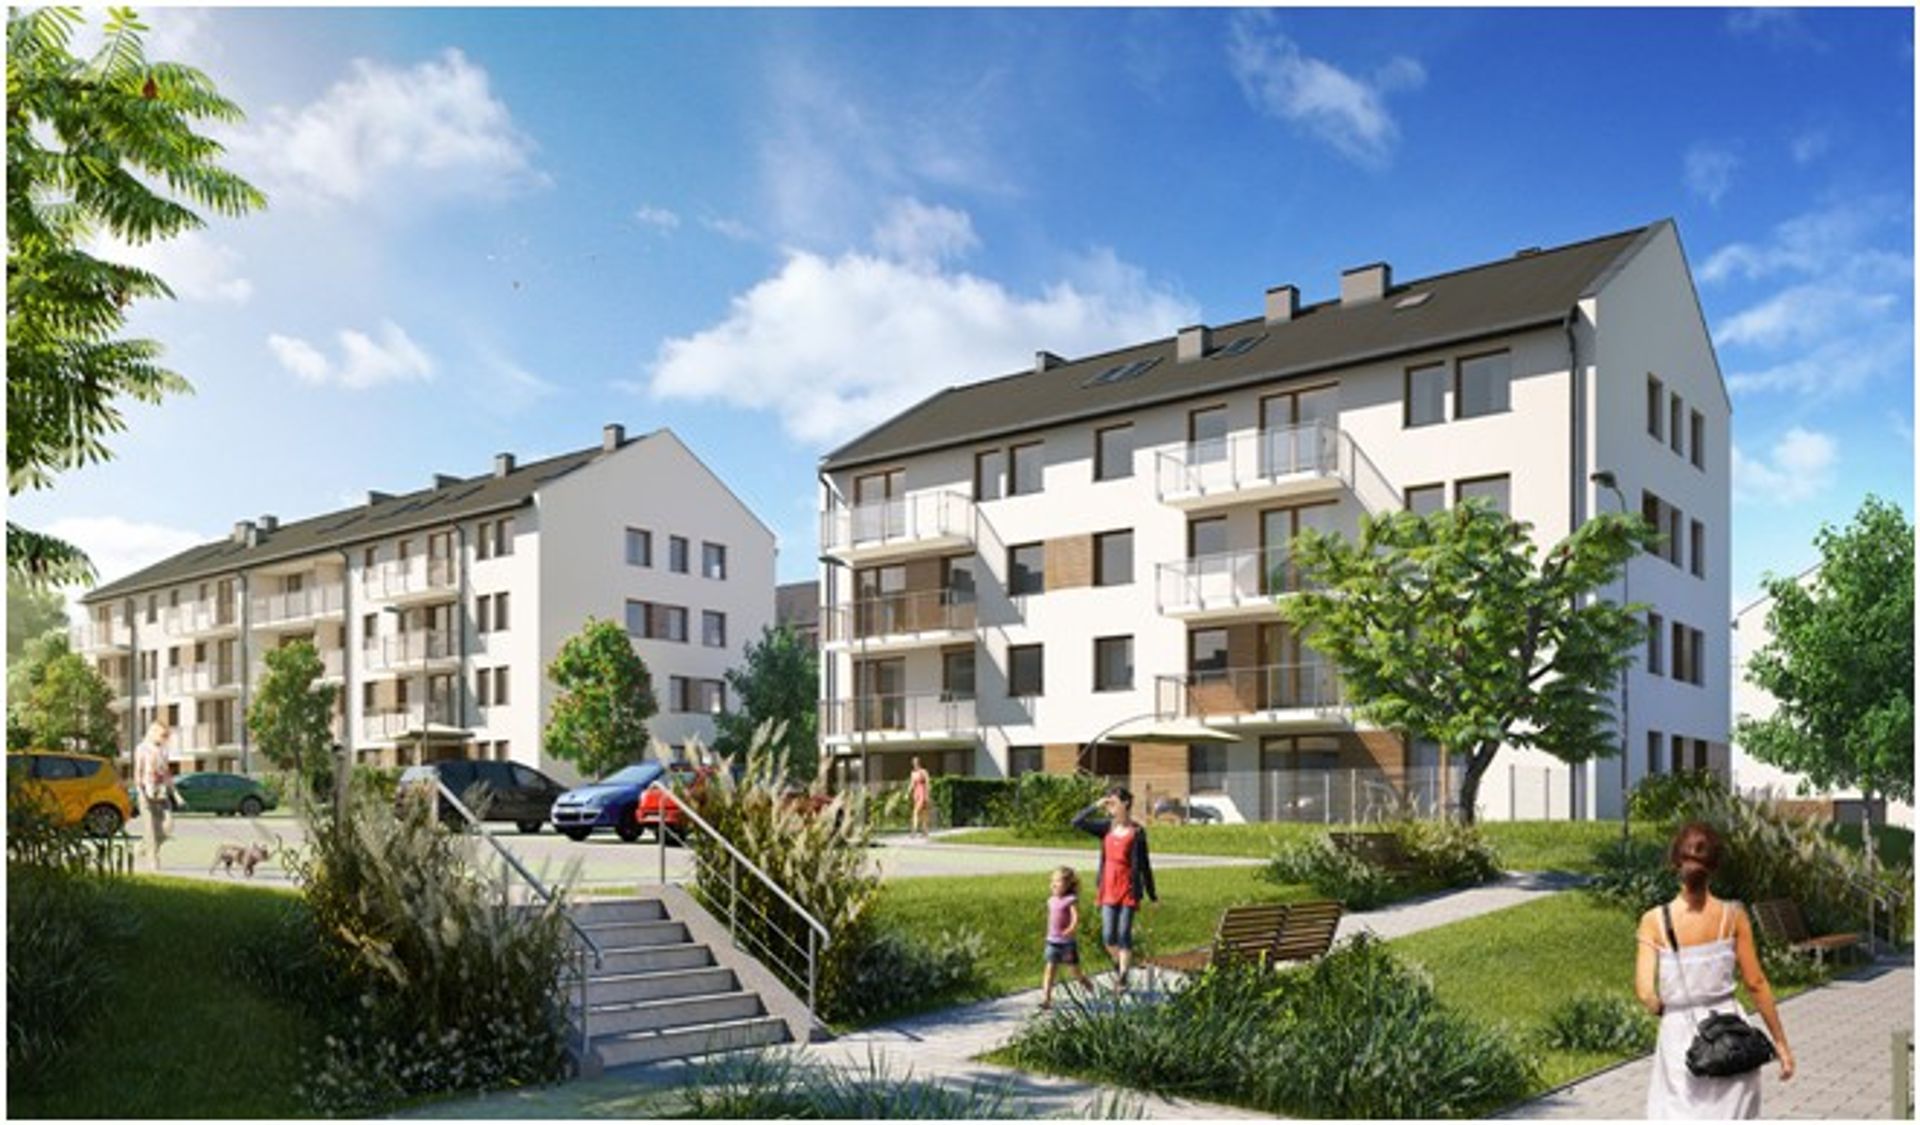  We wrześniu Inpro wprowadzi do oferty blisko 300 nowych mieszkań